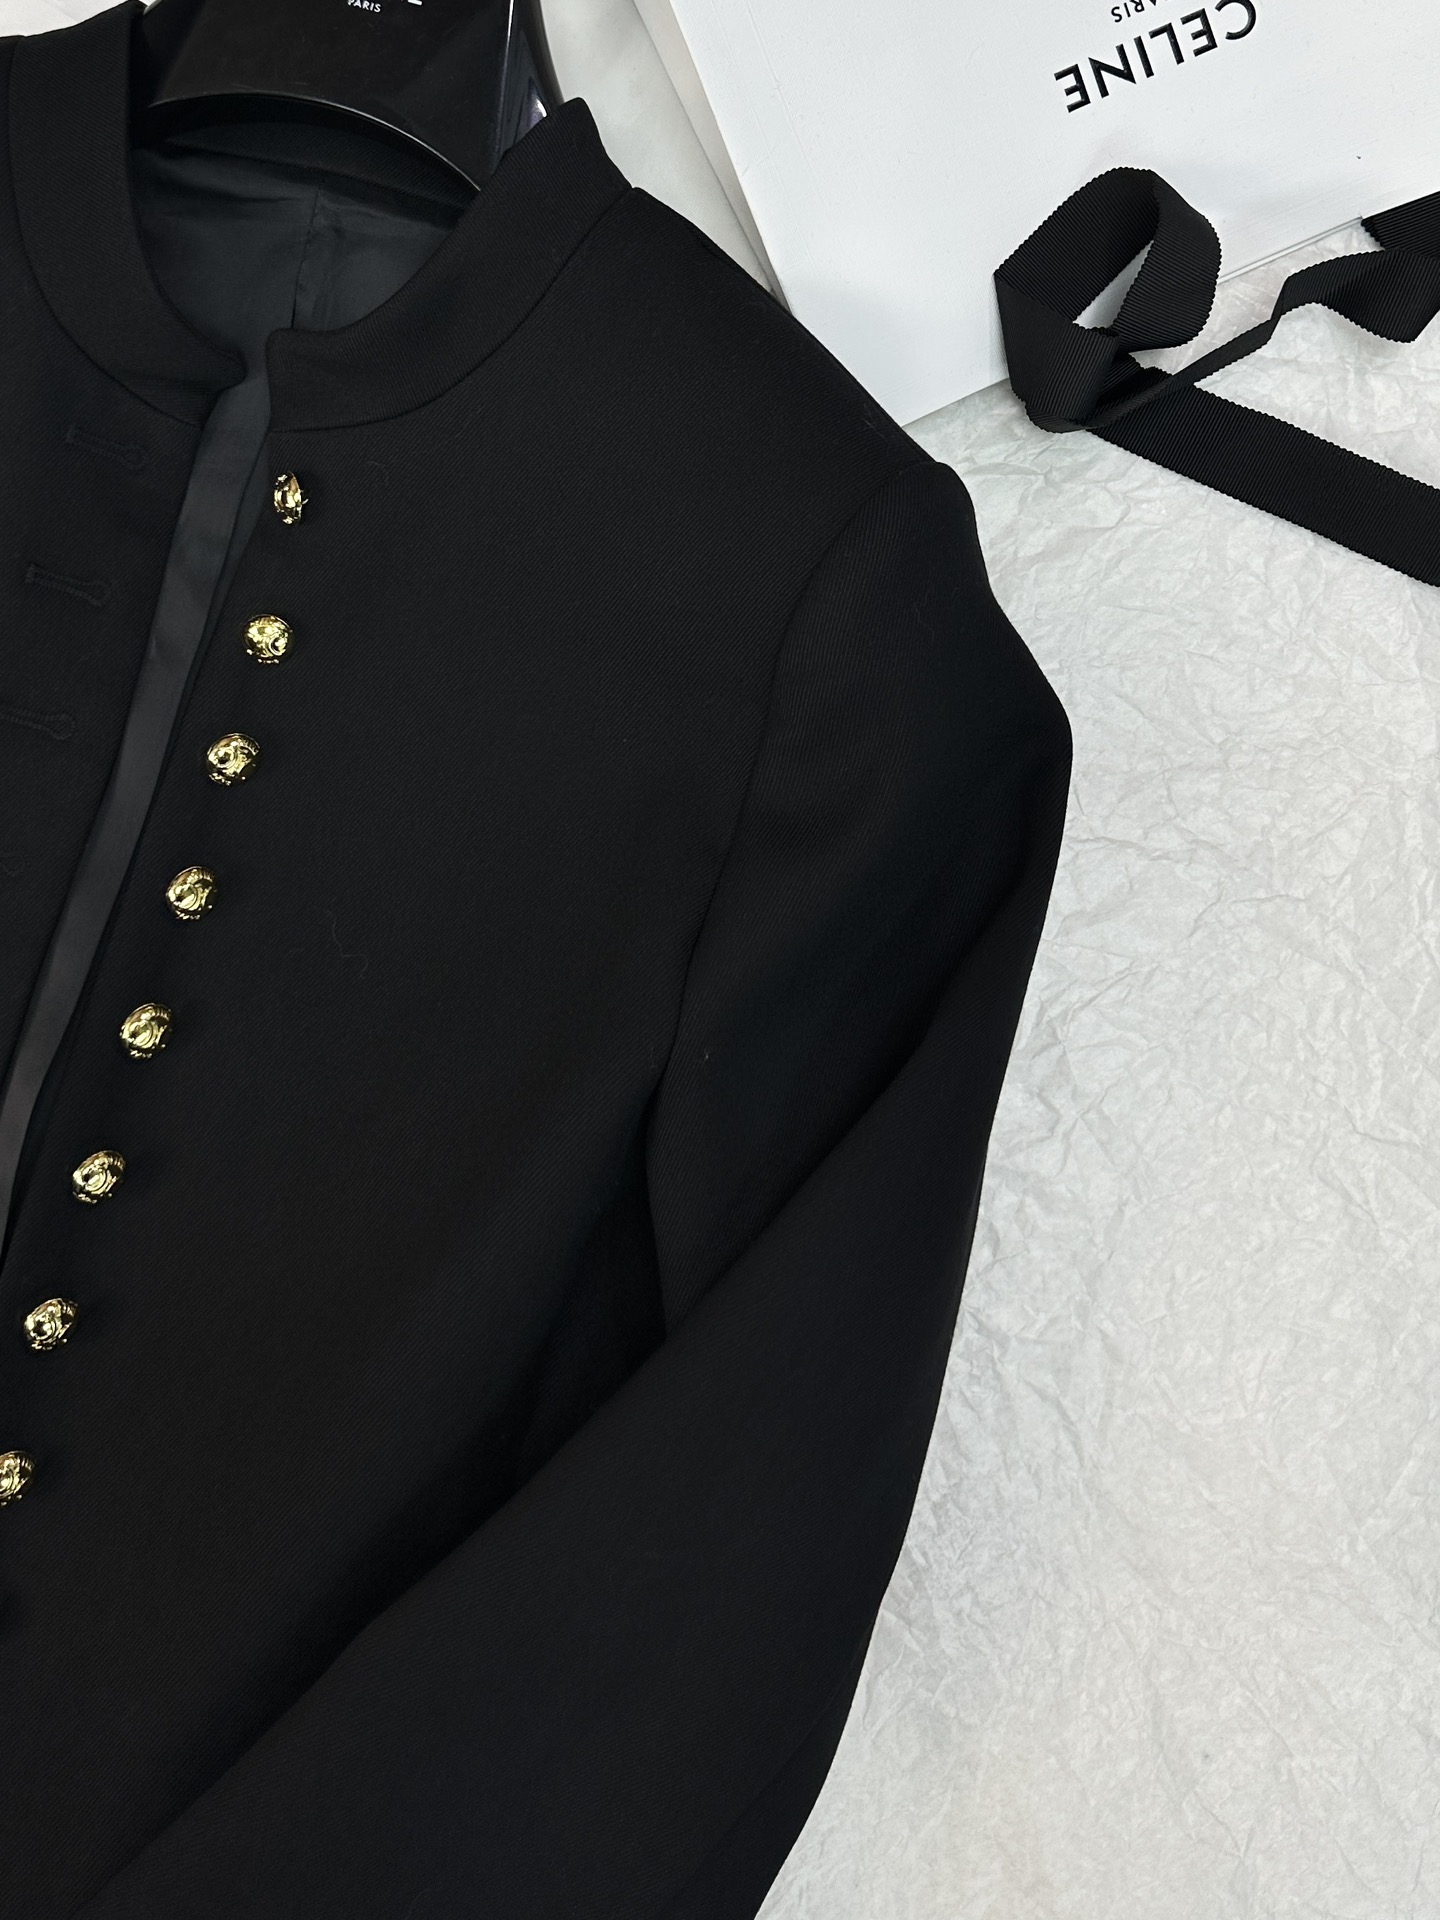 激安大特価最新作の セリーヌツイードジャケットコピー 暖かい トップス アウター ファッション 高級品 ブラック_4